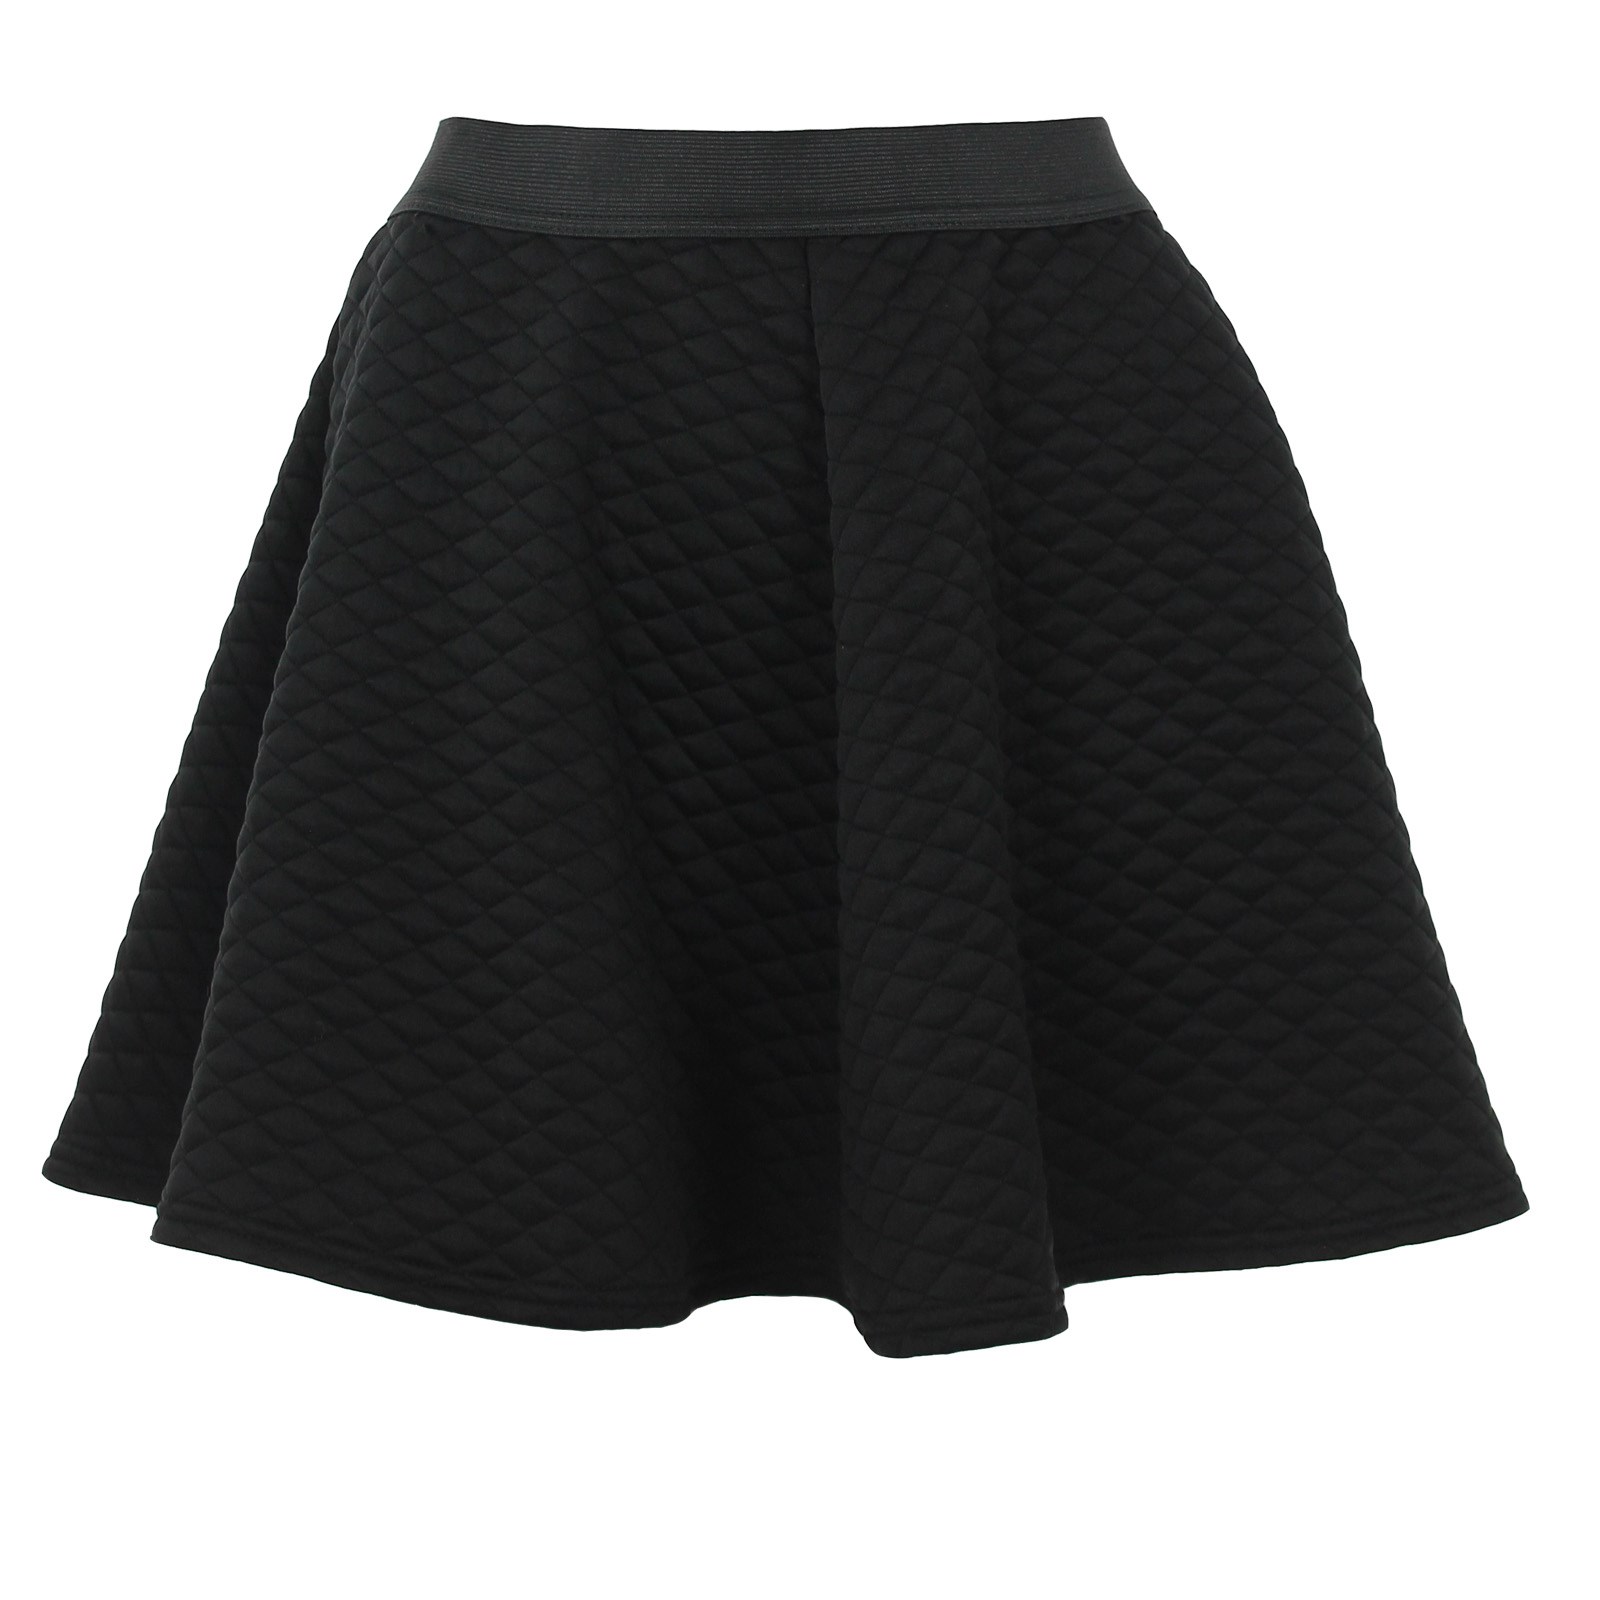 quilted black skater skirt